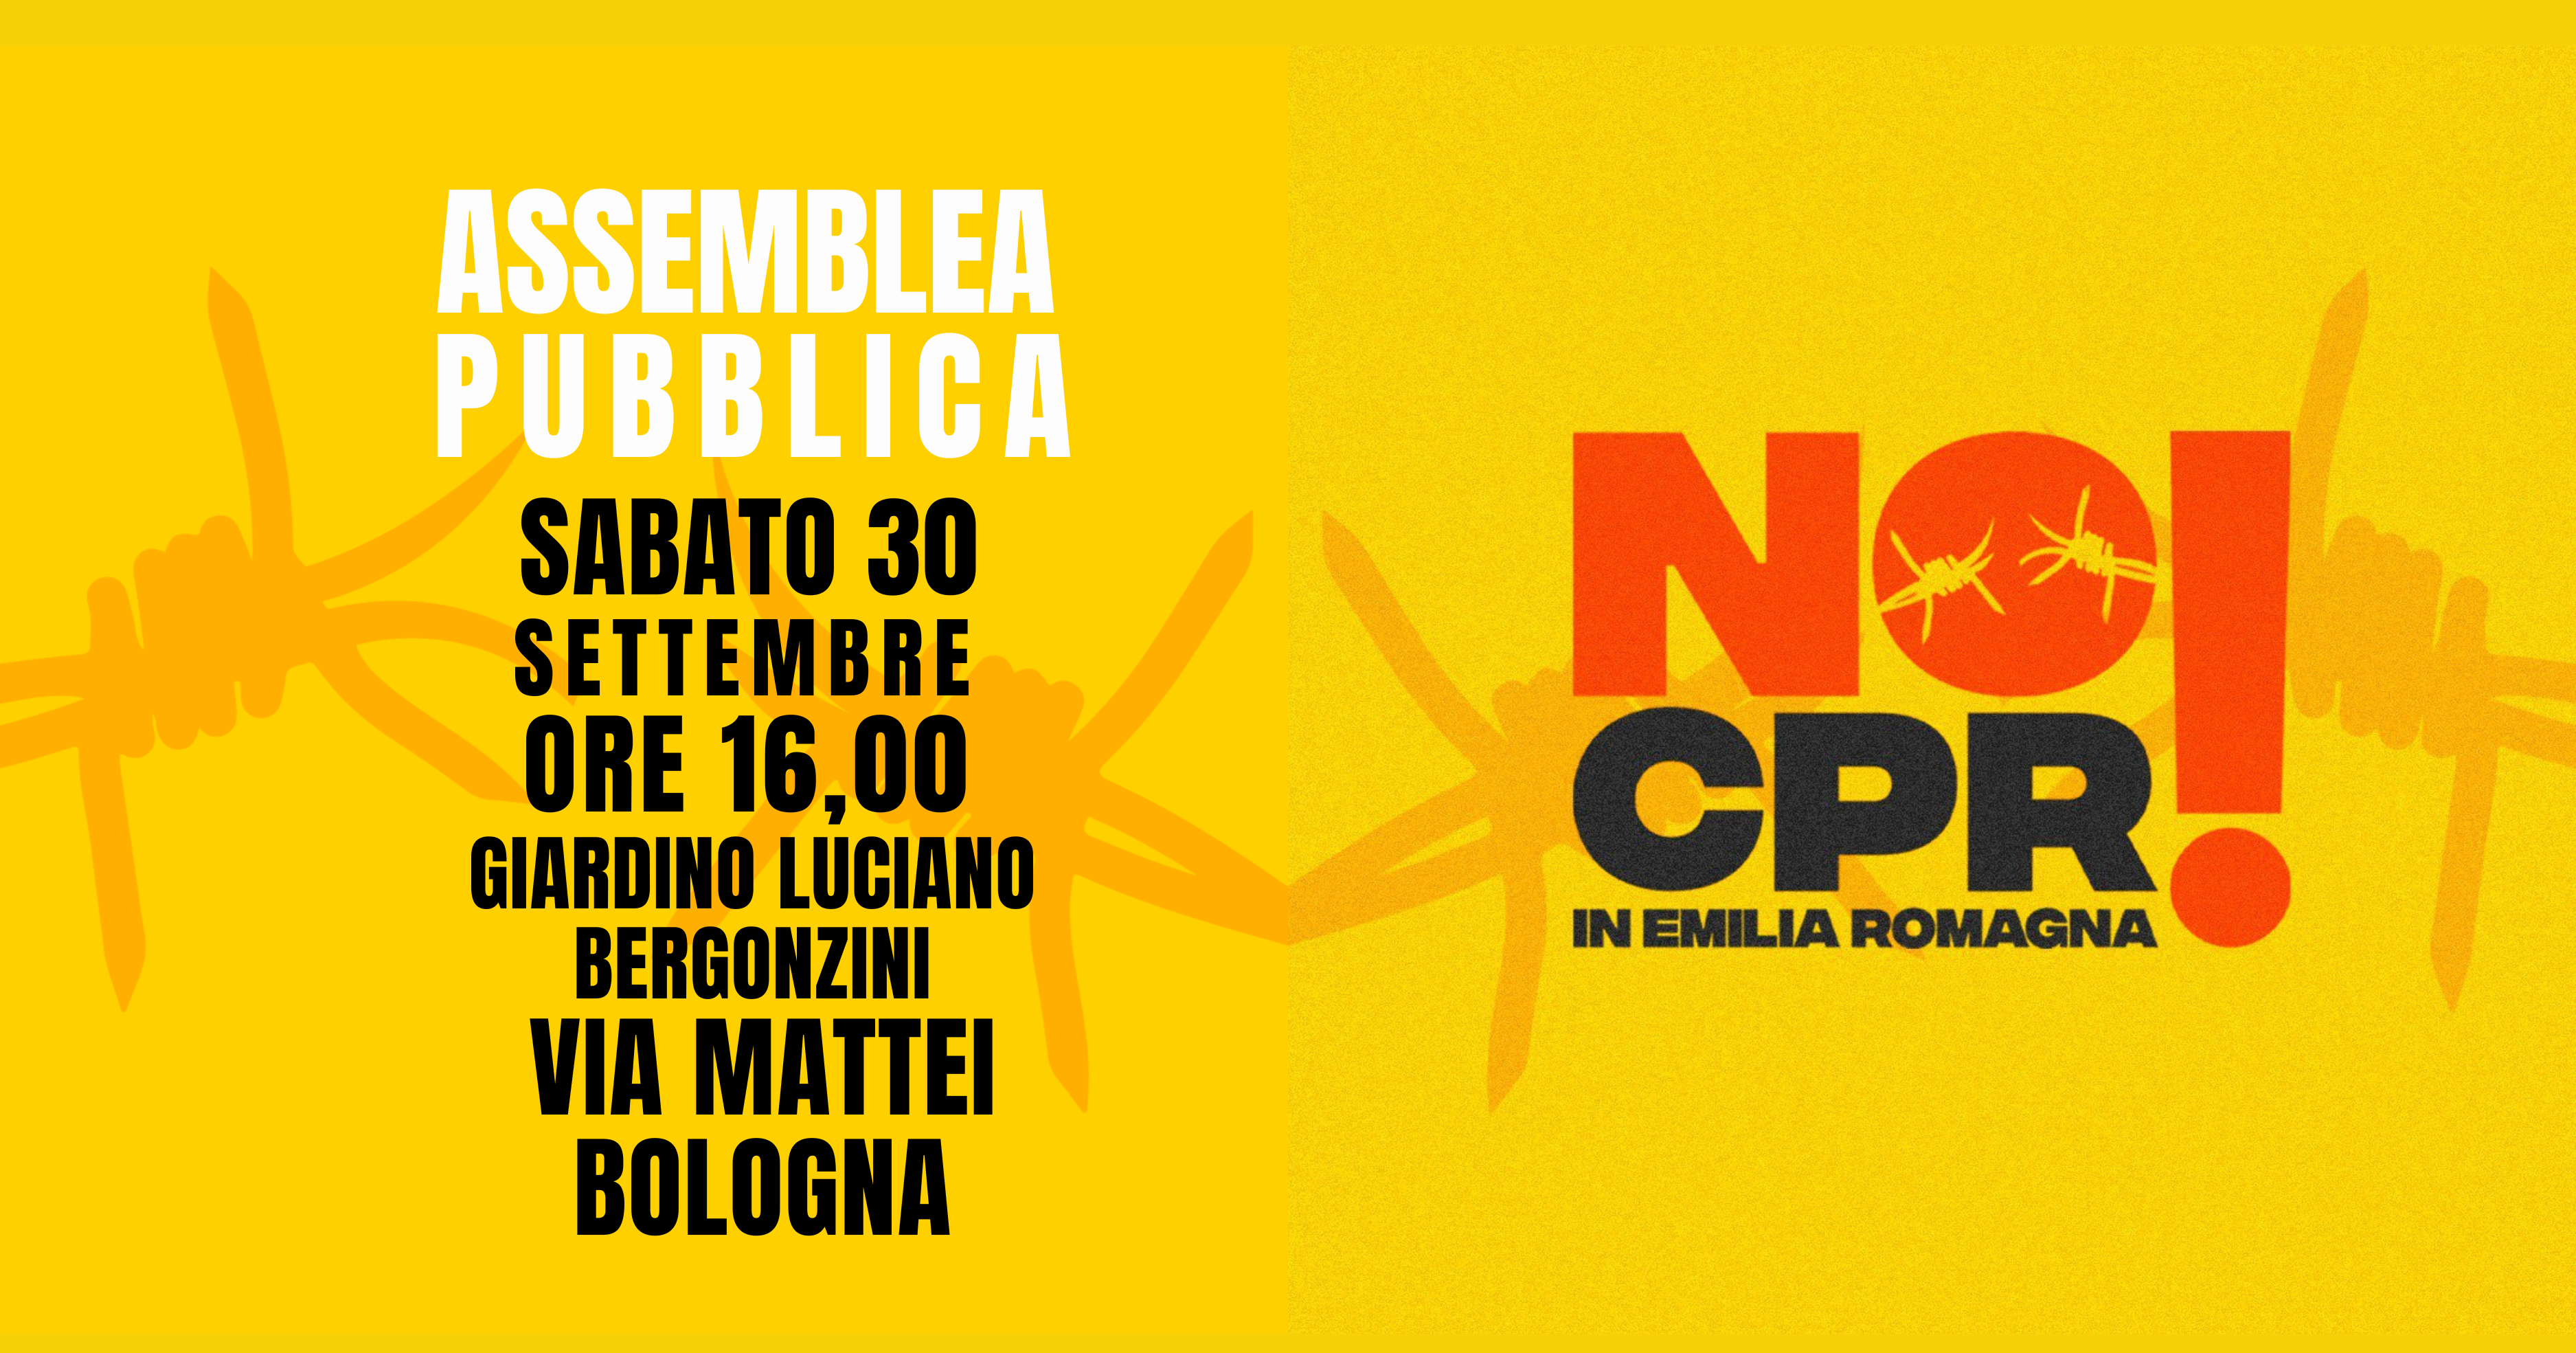 Al momento stai visualizzando PUBLIC ASSEMBLY: NO CPR in Emilia Romagna!